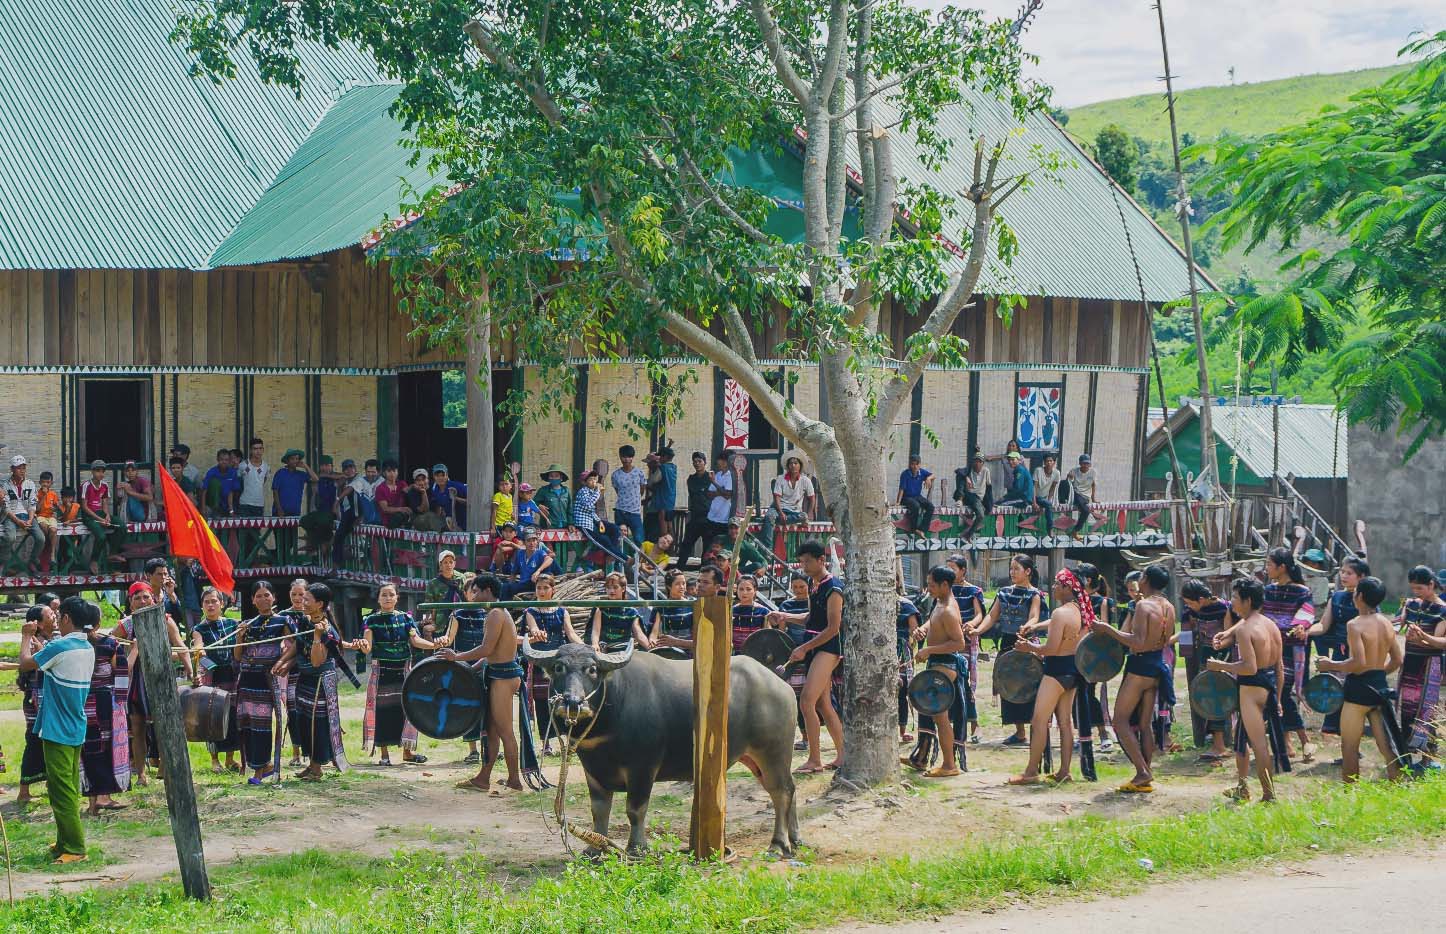 Lễ hội góp phần gìn giữ bản sắc văn hóa của người làng Prăng. Ảnh: Văn Ngọc  